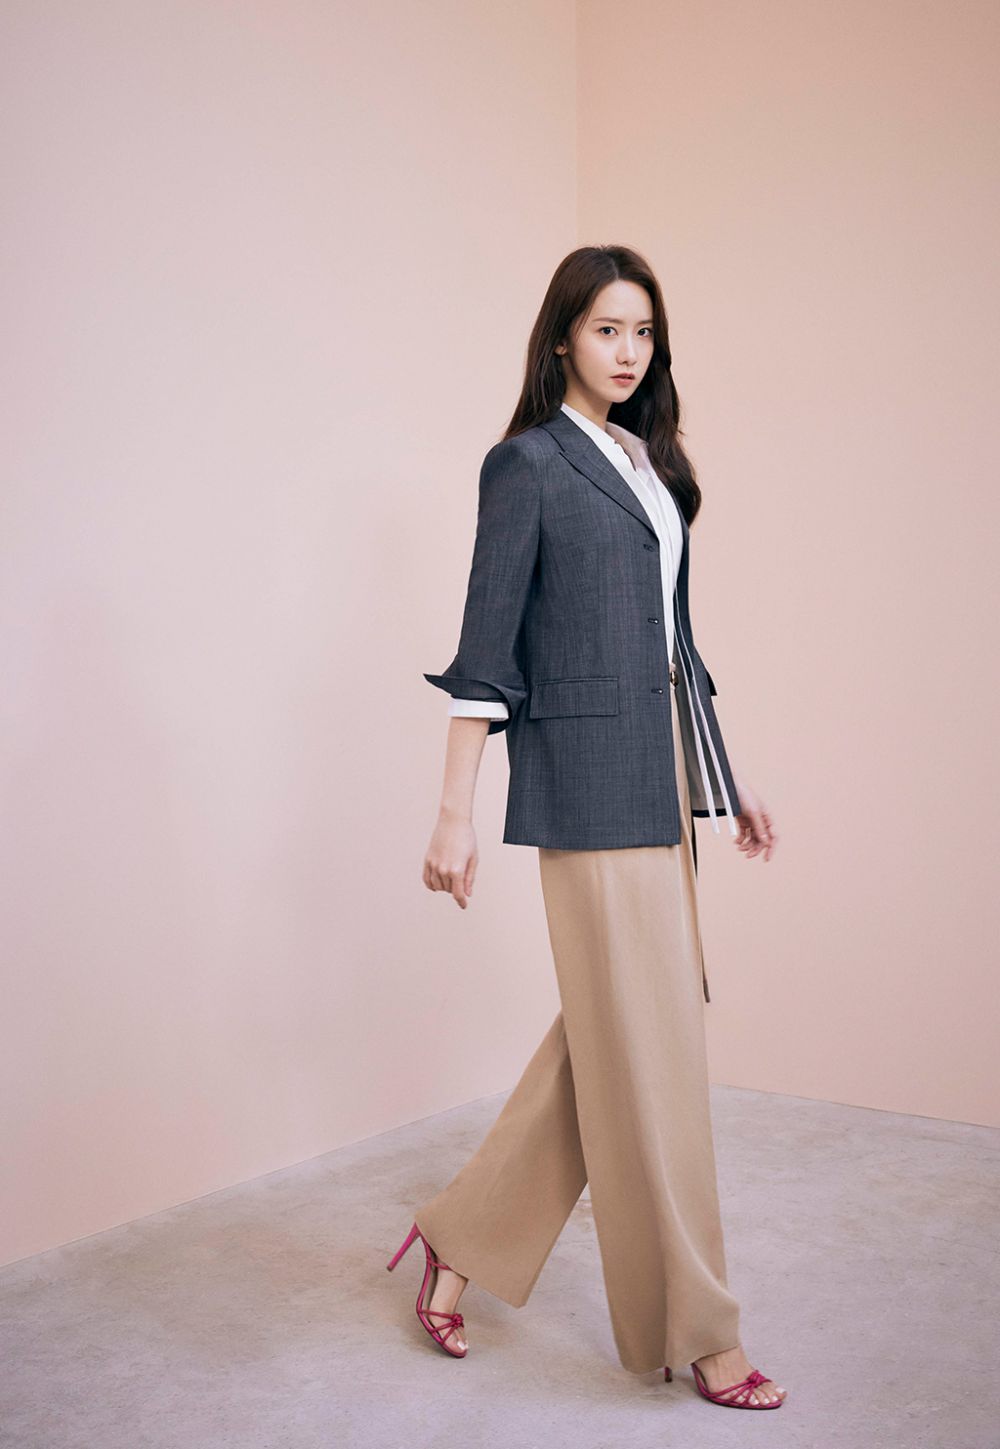 7 Ide Padu Padan Outfit untuk Ngantor ala Yoona SNSD, Super Elegan!